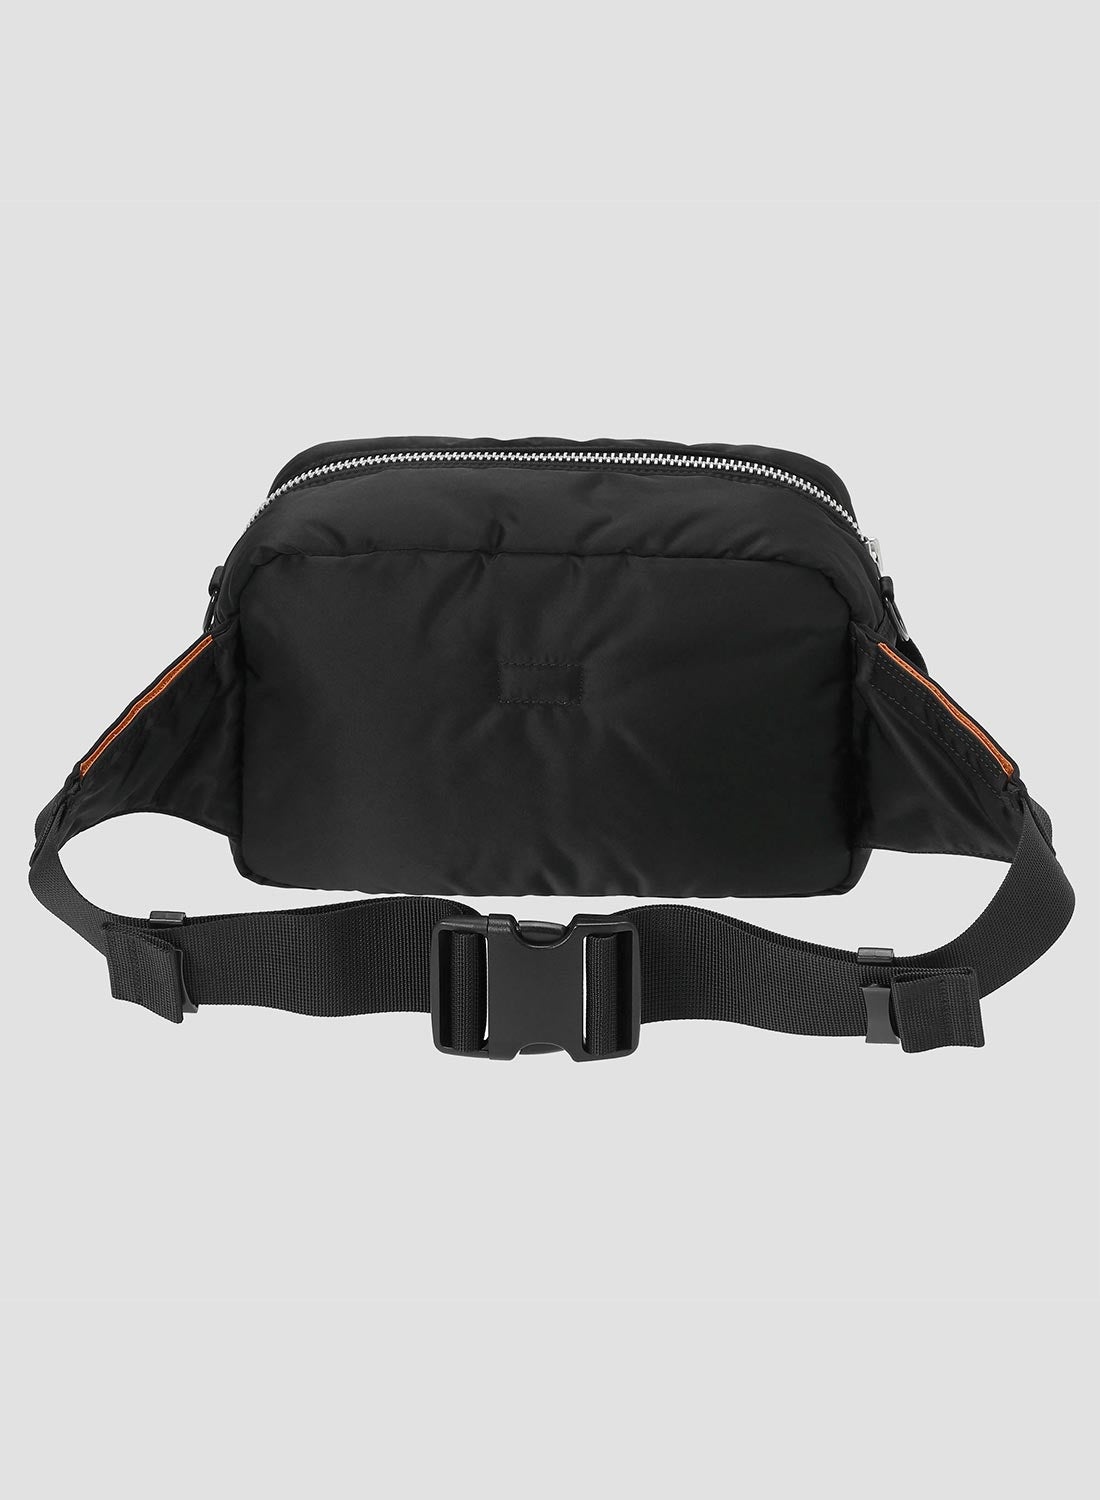 Porter-Yoshida & Co Tanker Waist Bag in Black - 5